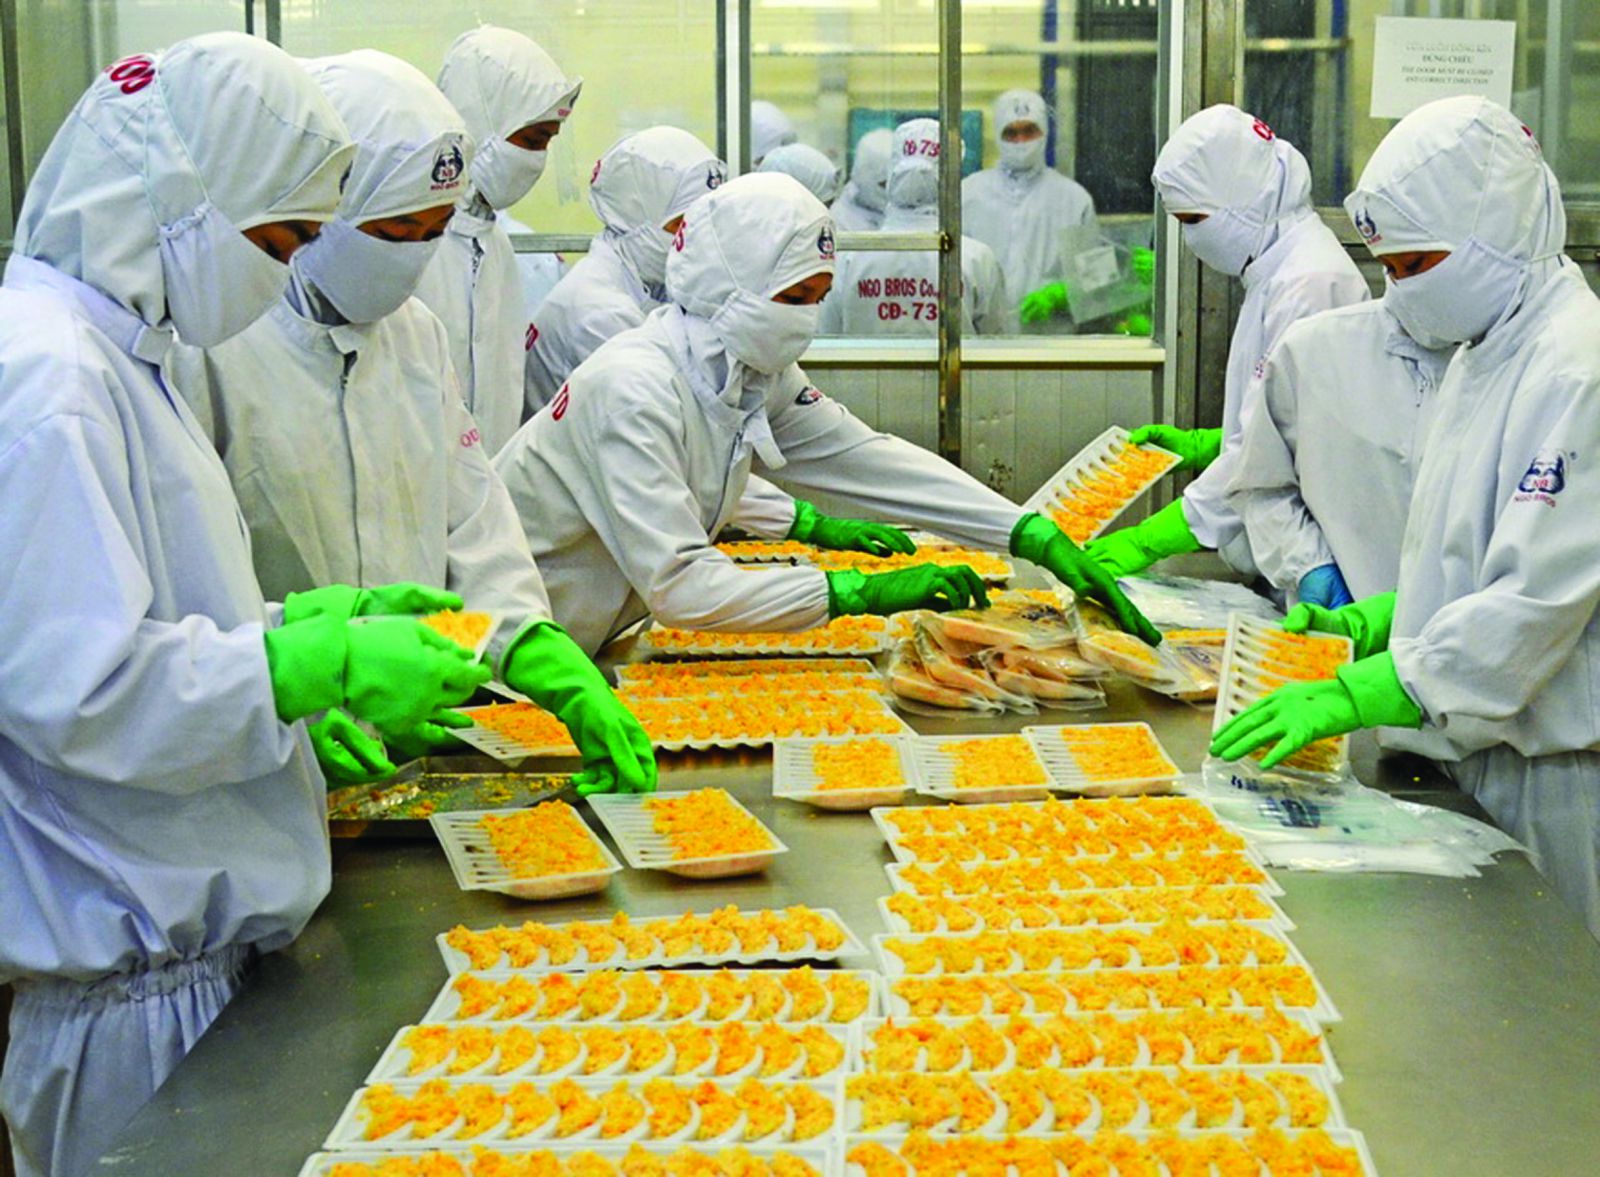  Đóng gói tôm bao bột xuất khẩu tại Công ty Thủy sản Minh Phú, Cà Mau. Ảnh: Phú Hữu